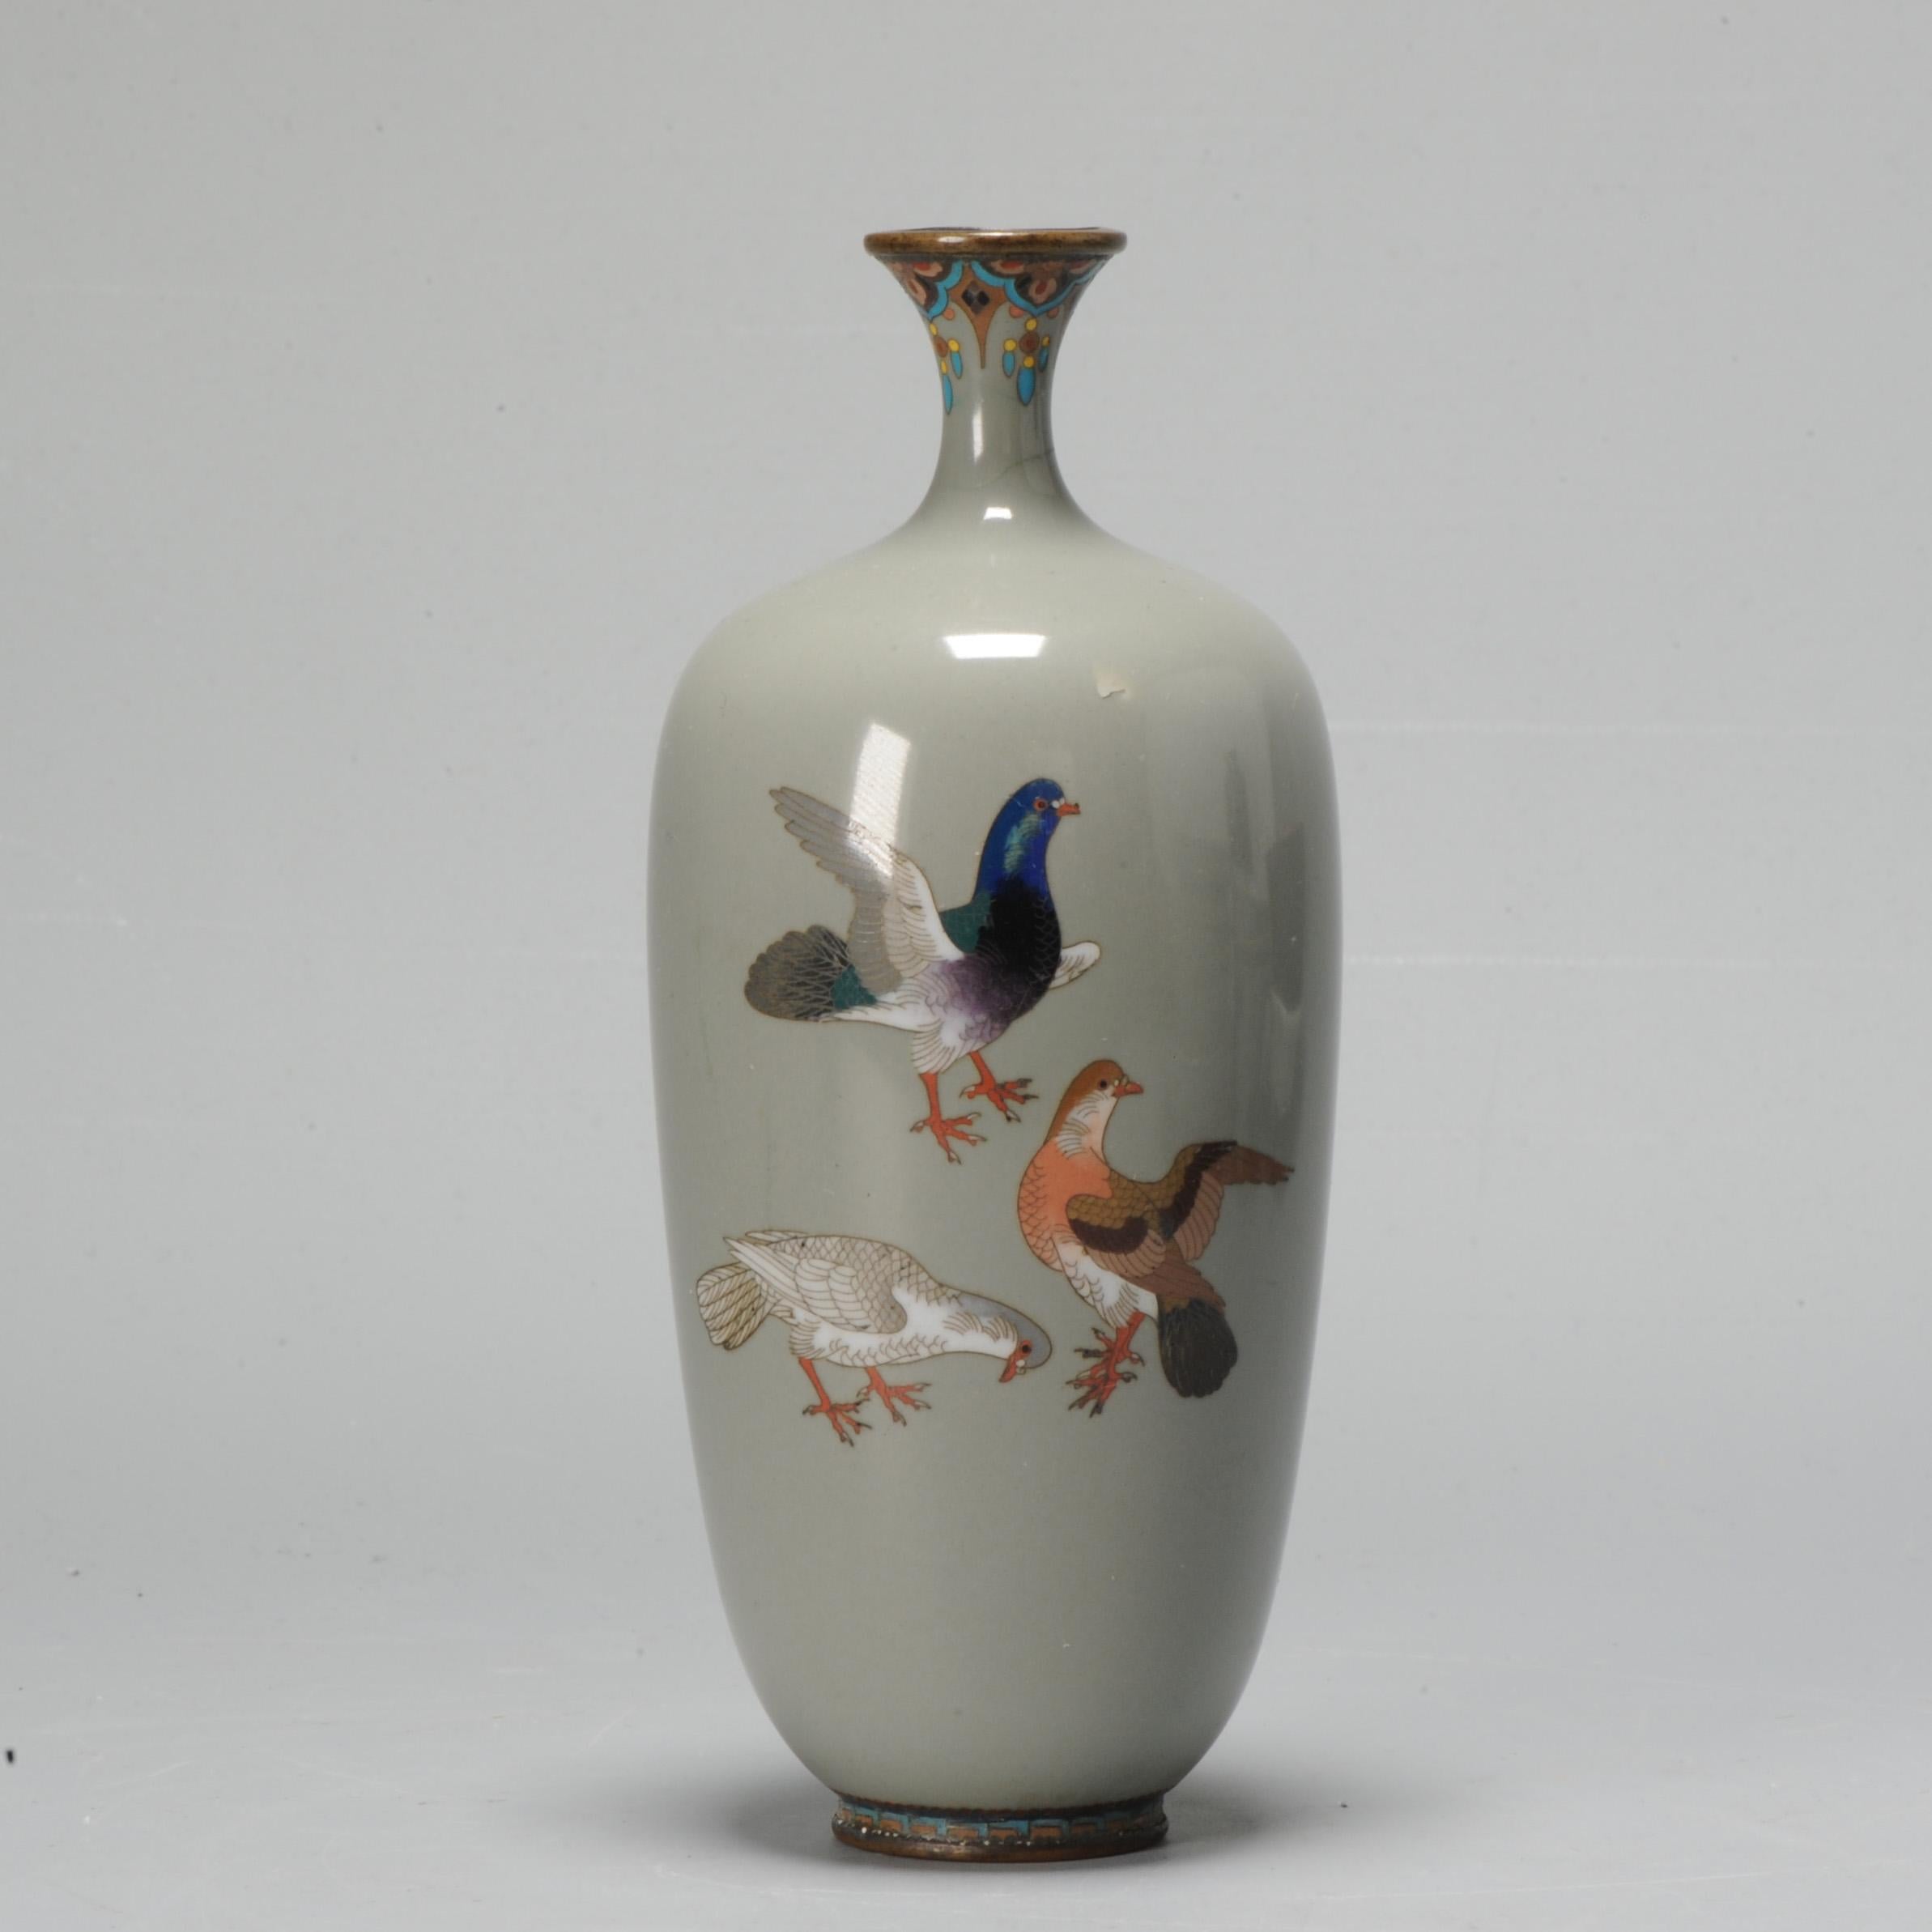 Petit vase de qualité supérieure de la période Meiji. Avec une belle scène d'oiseaux (colombes/pigeons)

ère Meiji (1868-1912), 19e siècle

Un article intéressant sur les cloisons japonaises est disponible ici.


Condit
Quelques signes